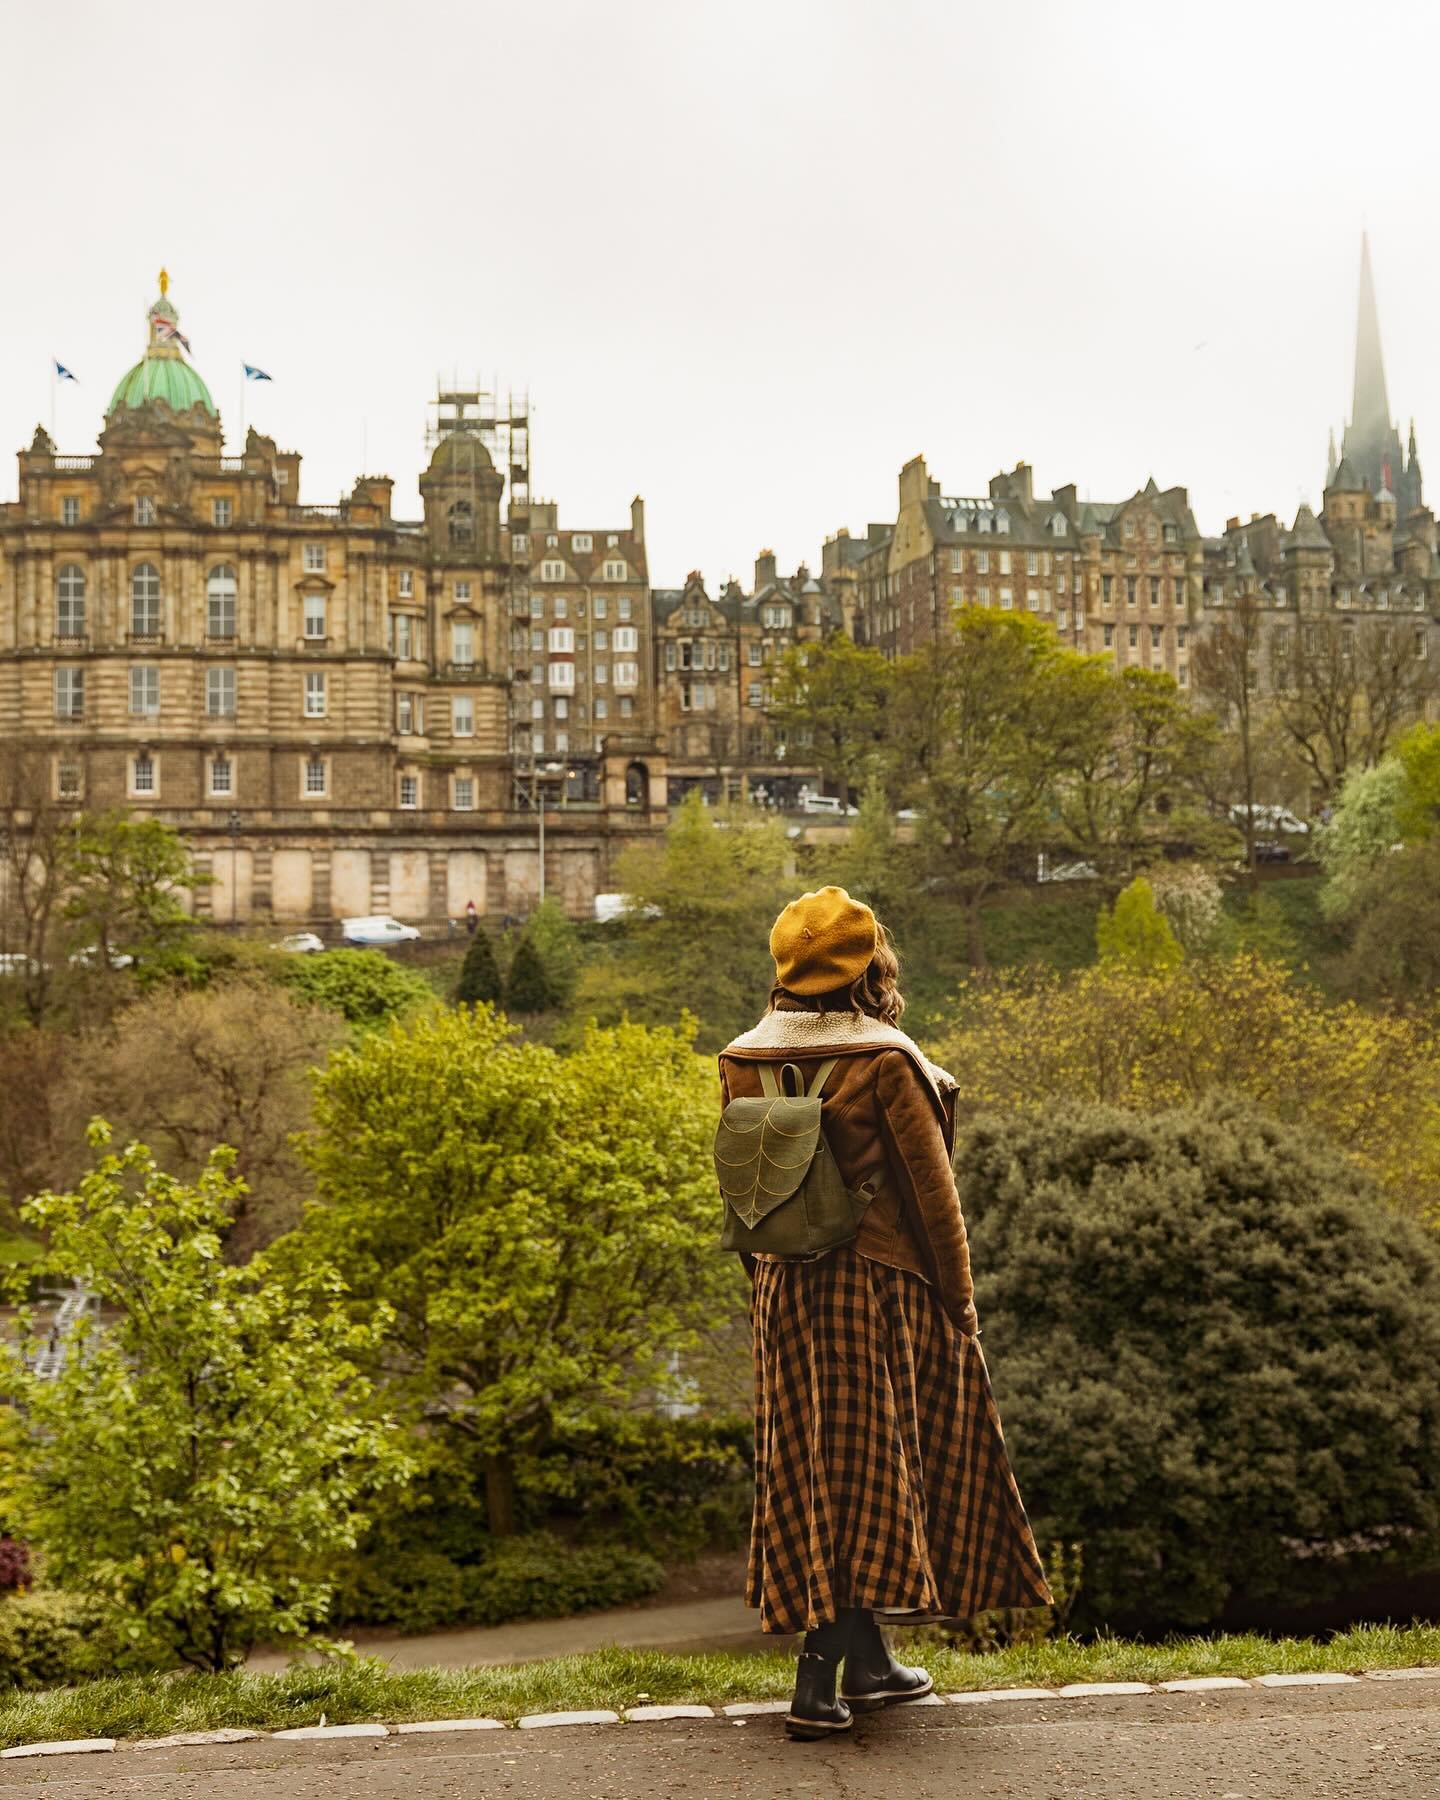 Edinburgh feels like a real-life fairytale.

Photos by @leafling_photography